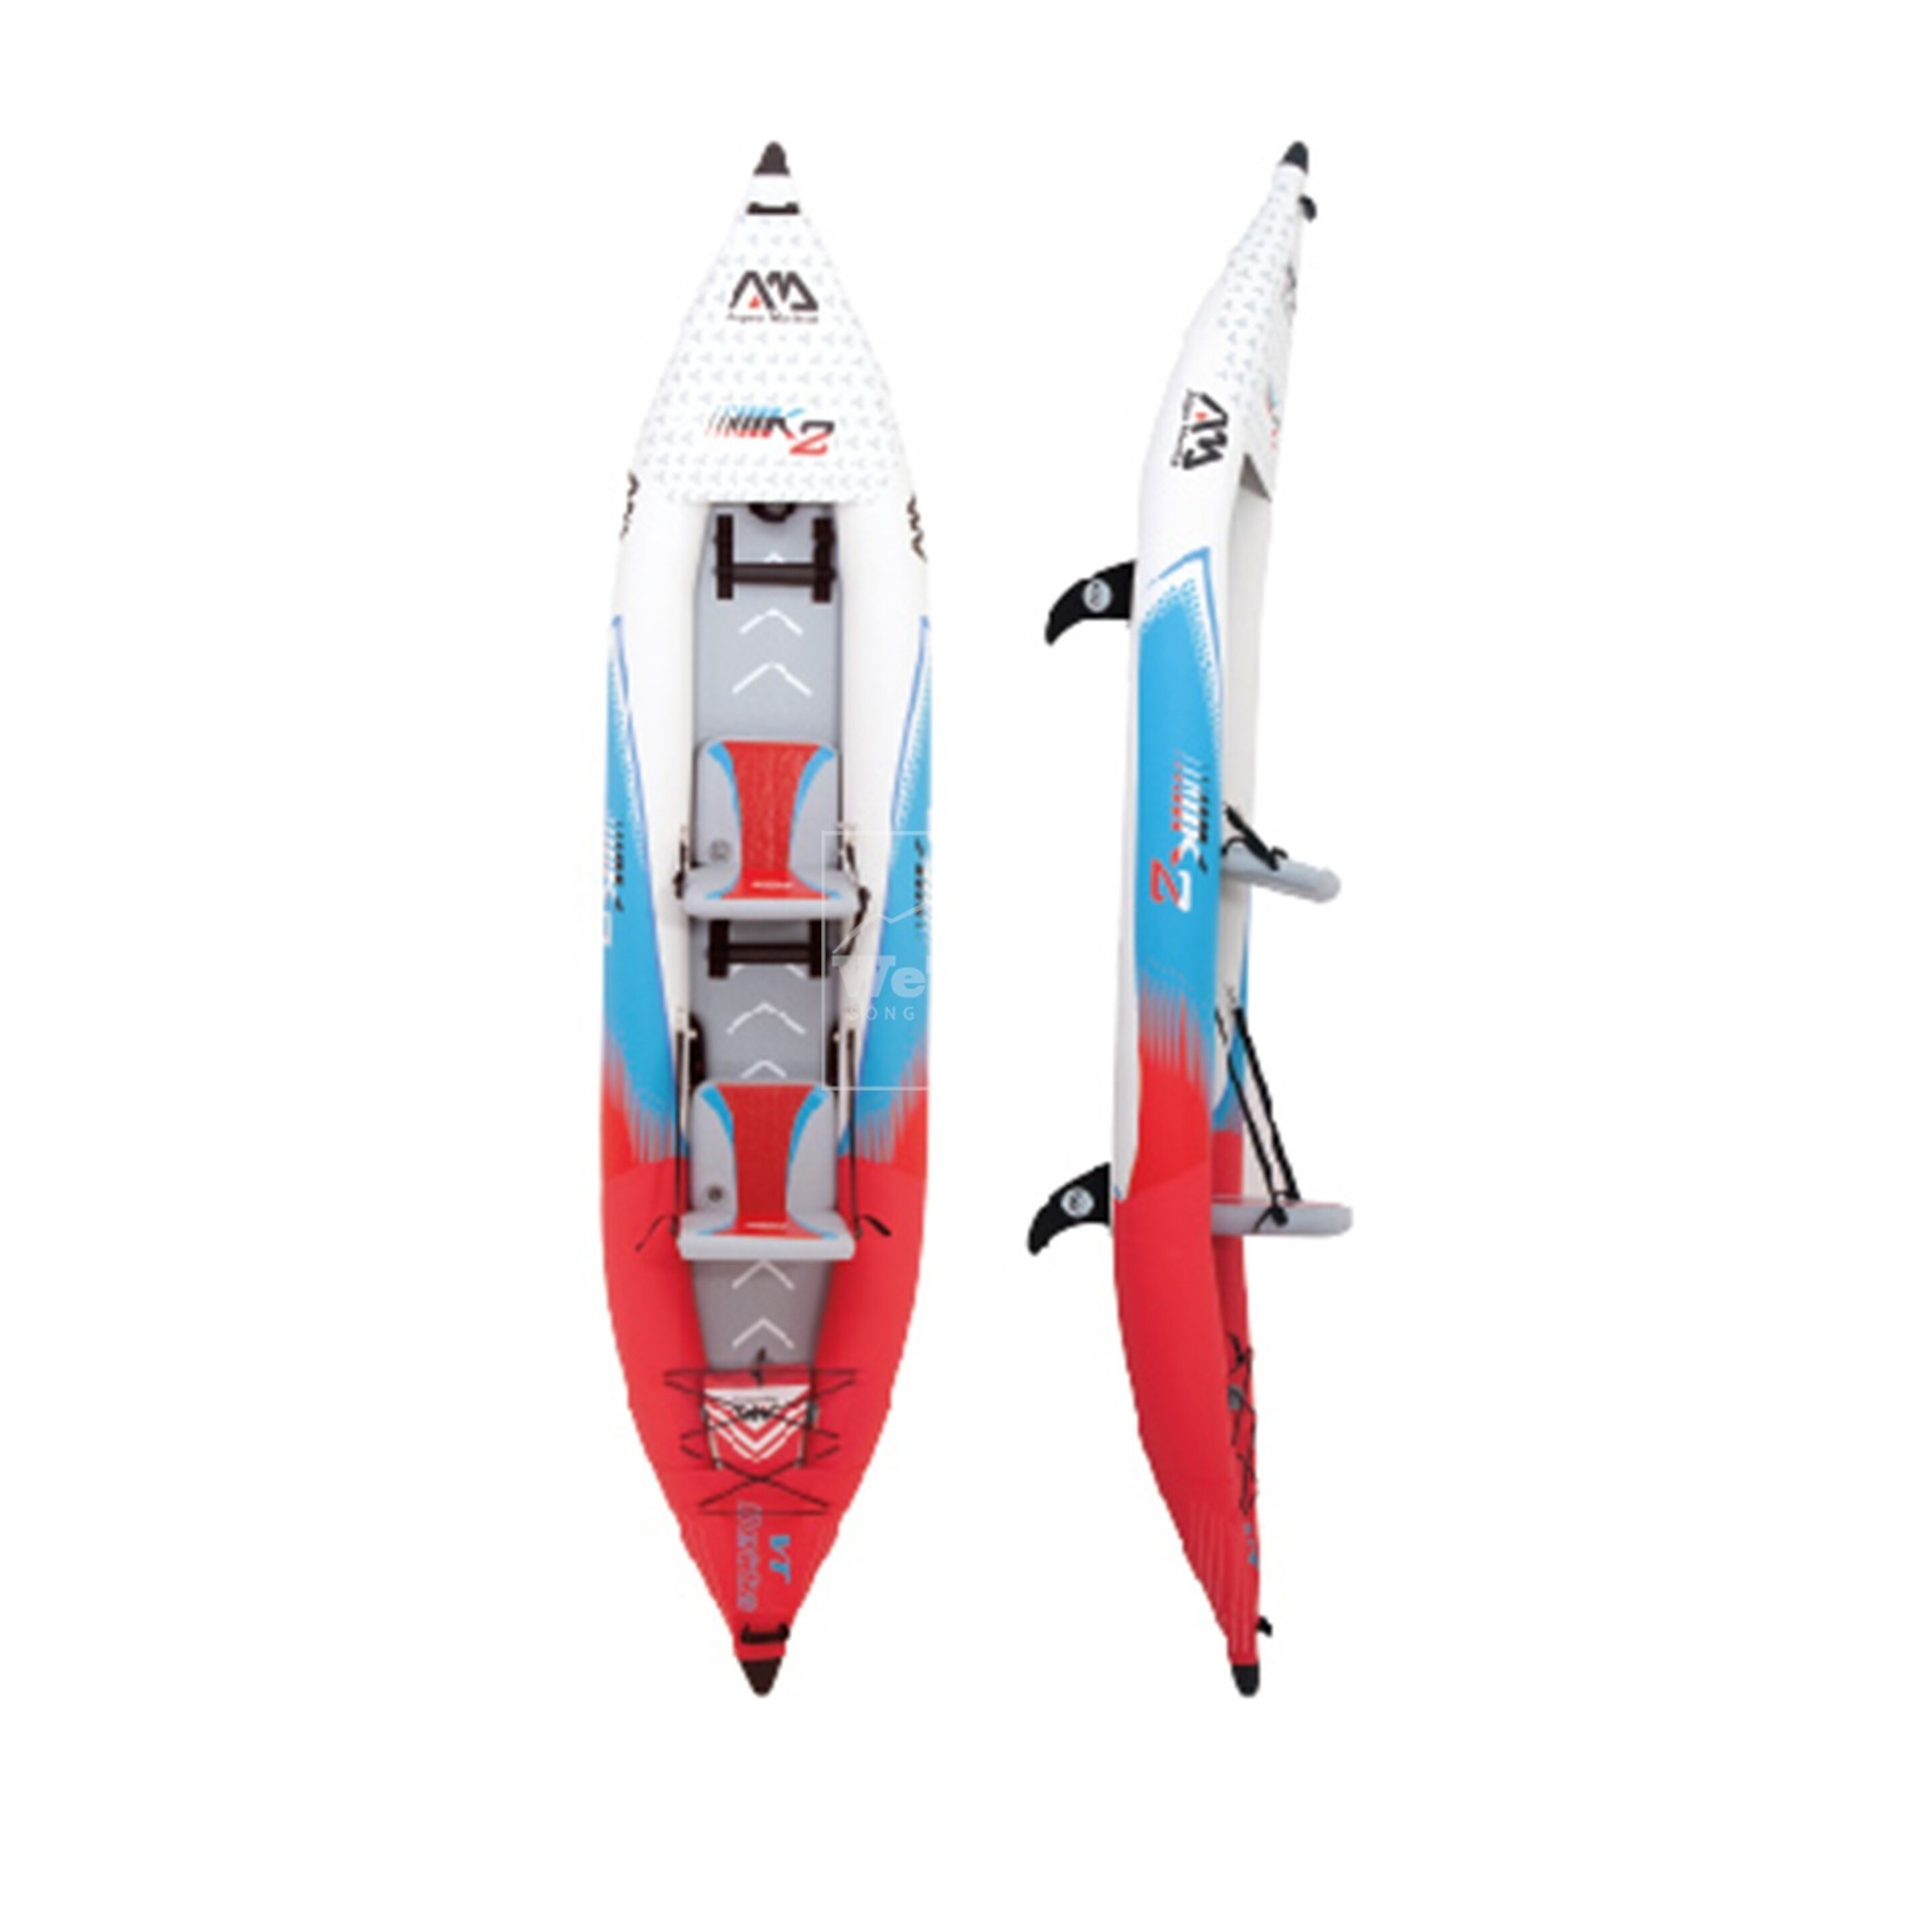 Kayak Hinchable Aqua Marina Betta Vt 13'6 Tandem